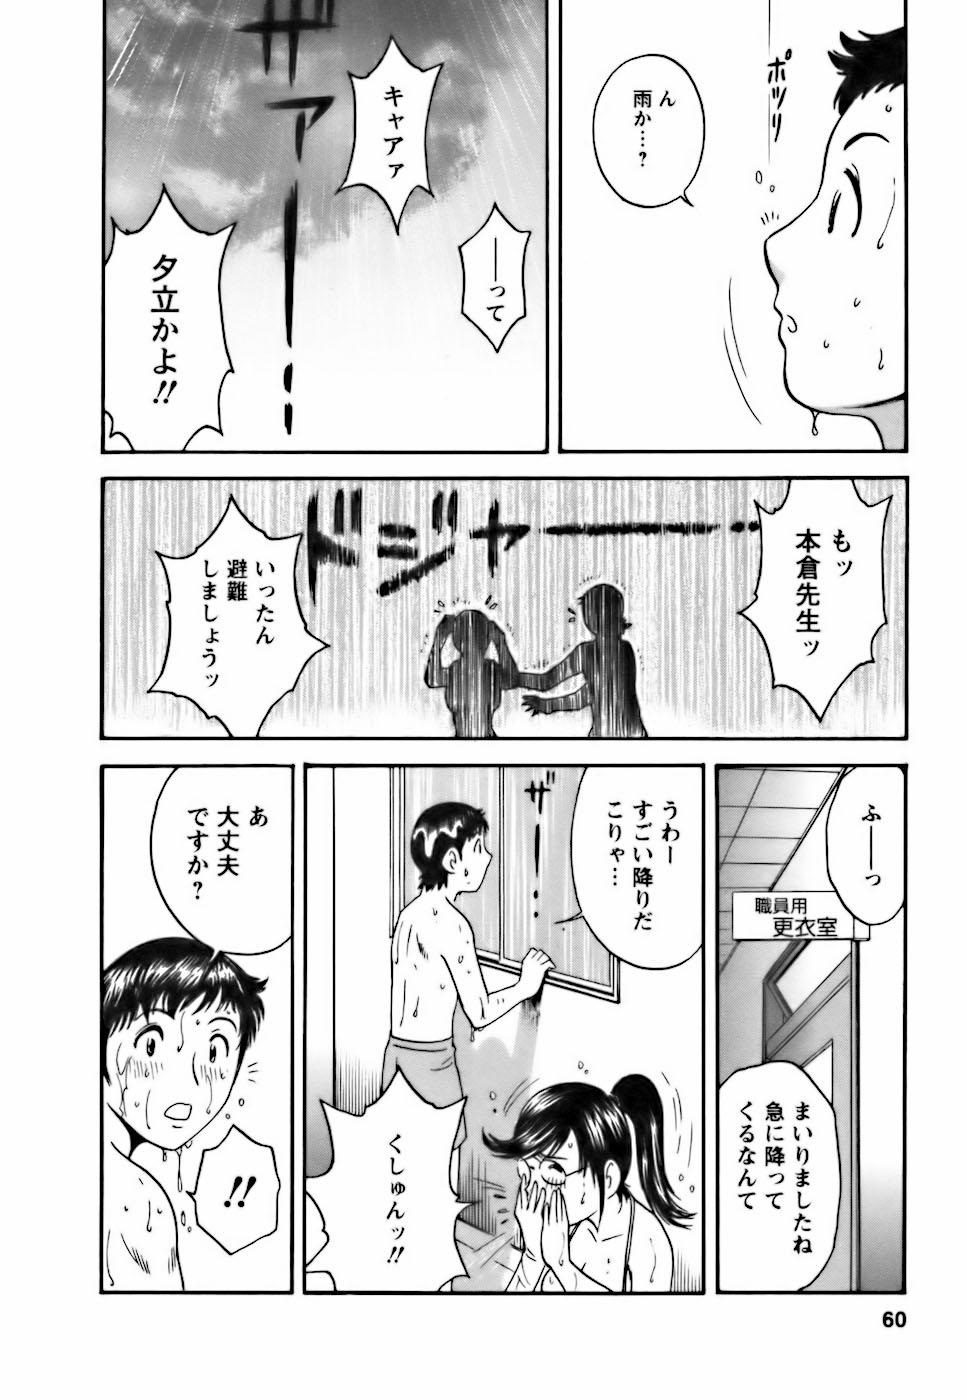 [Hidemaru] Mo-Retsu! Boin Sensei (Boing Boing Teacher) Vol.3 56